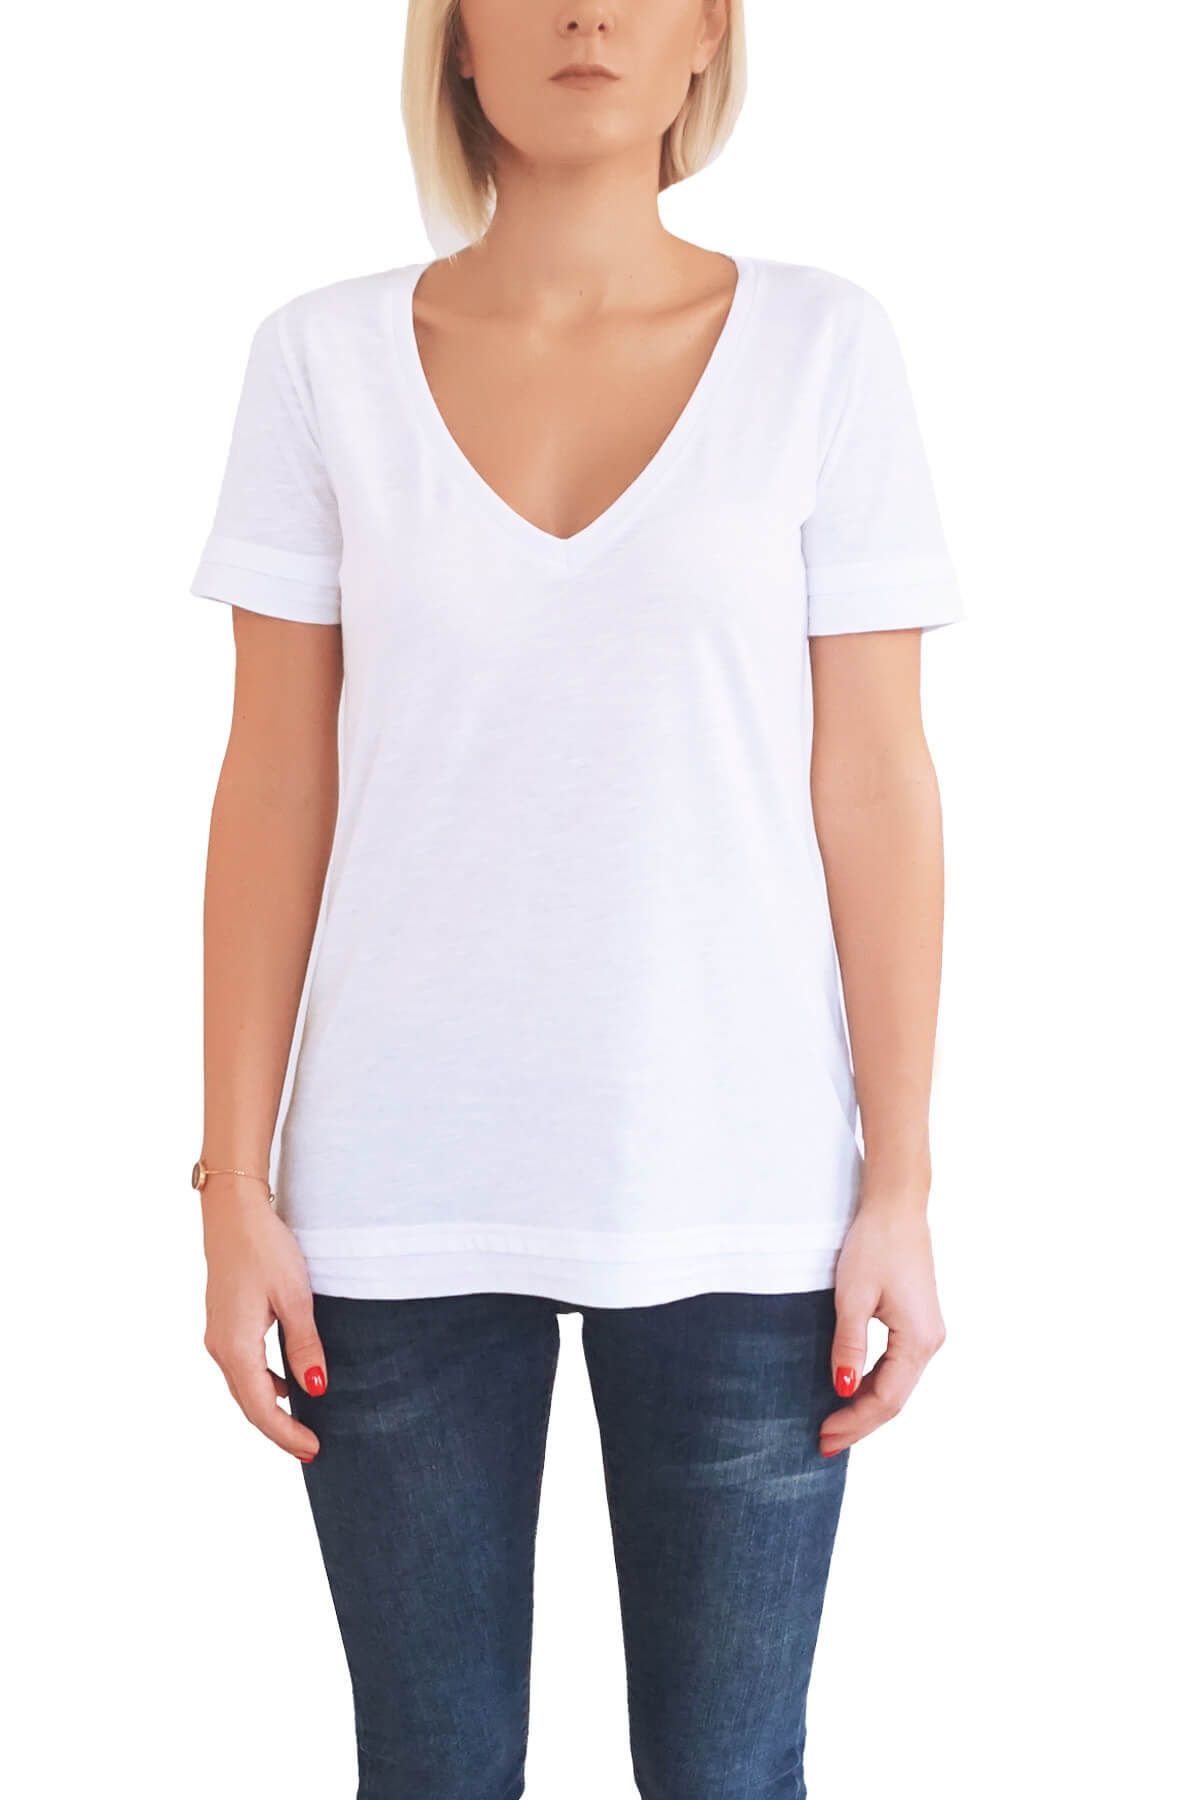 Mof Basics Kadın Beyaz T-Shirt DVYT-B